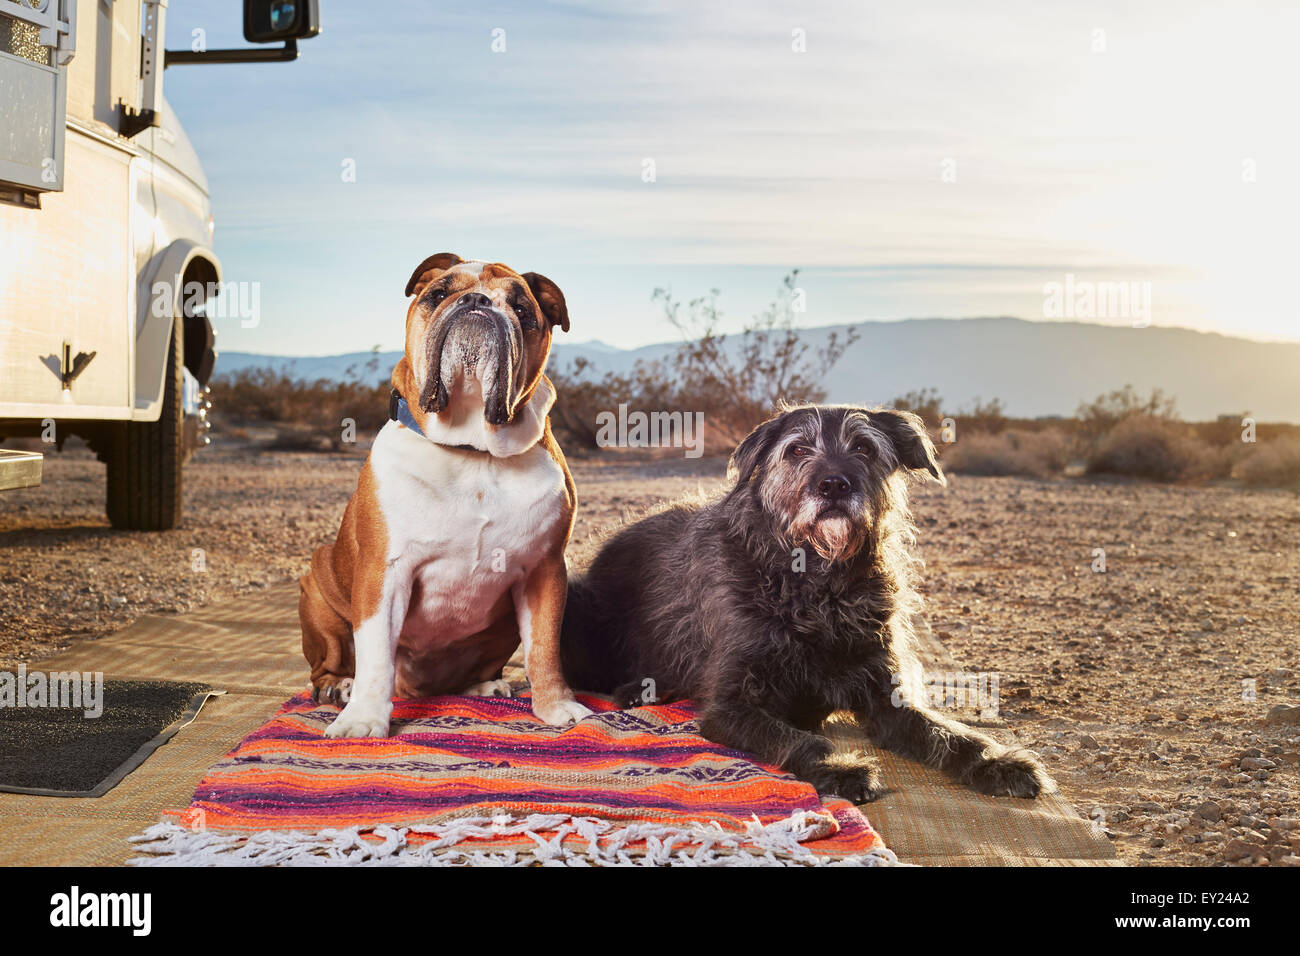 Porträt von zwei Hunden auf Teppich im Trailer park Stockfoto